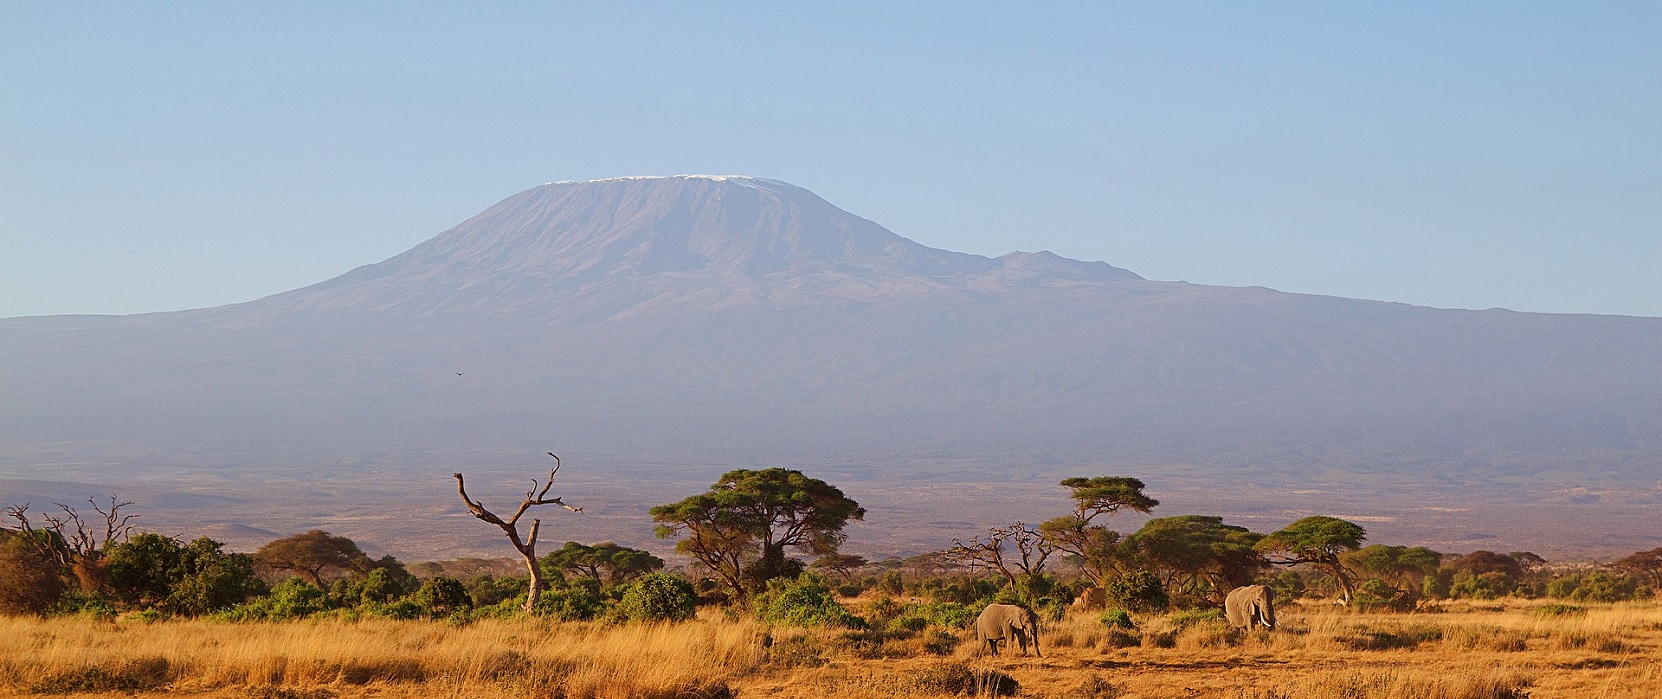 Острова юго восточной африки. Жирафы Кения Килиманджаро. Горы на Юго востоке Африки. Остров на Юго востоке Африки. Горный архипелаг Юго-Восточной Африки.